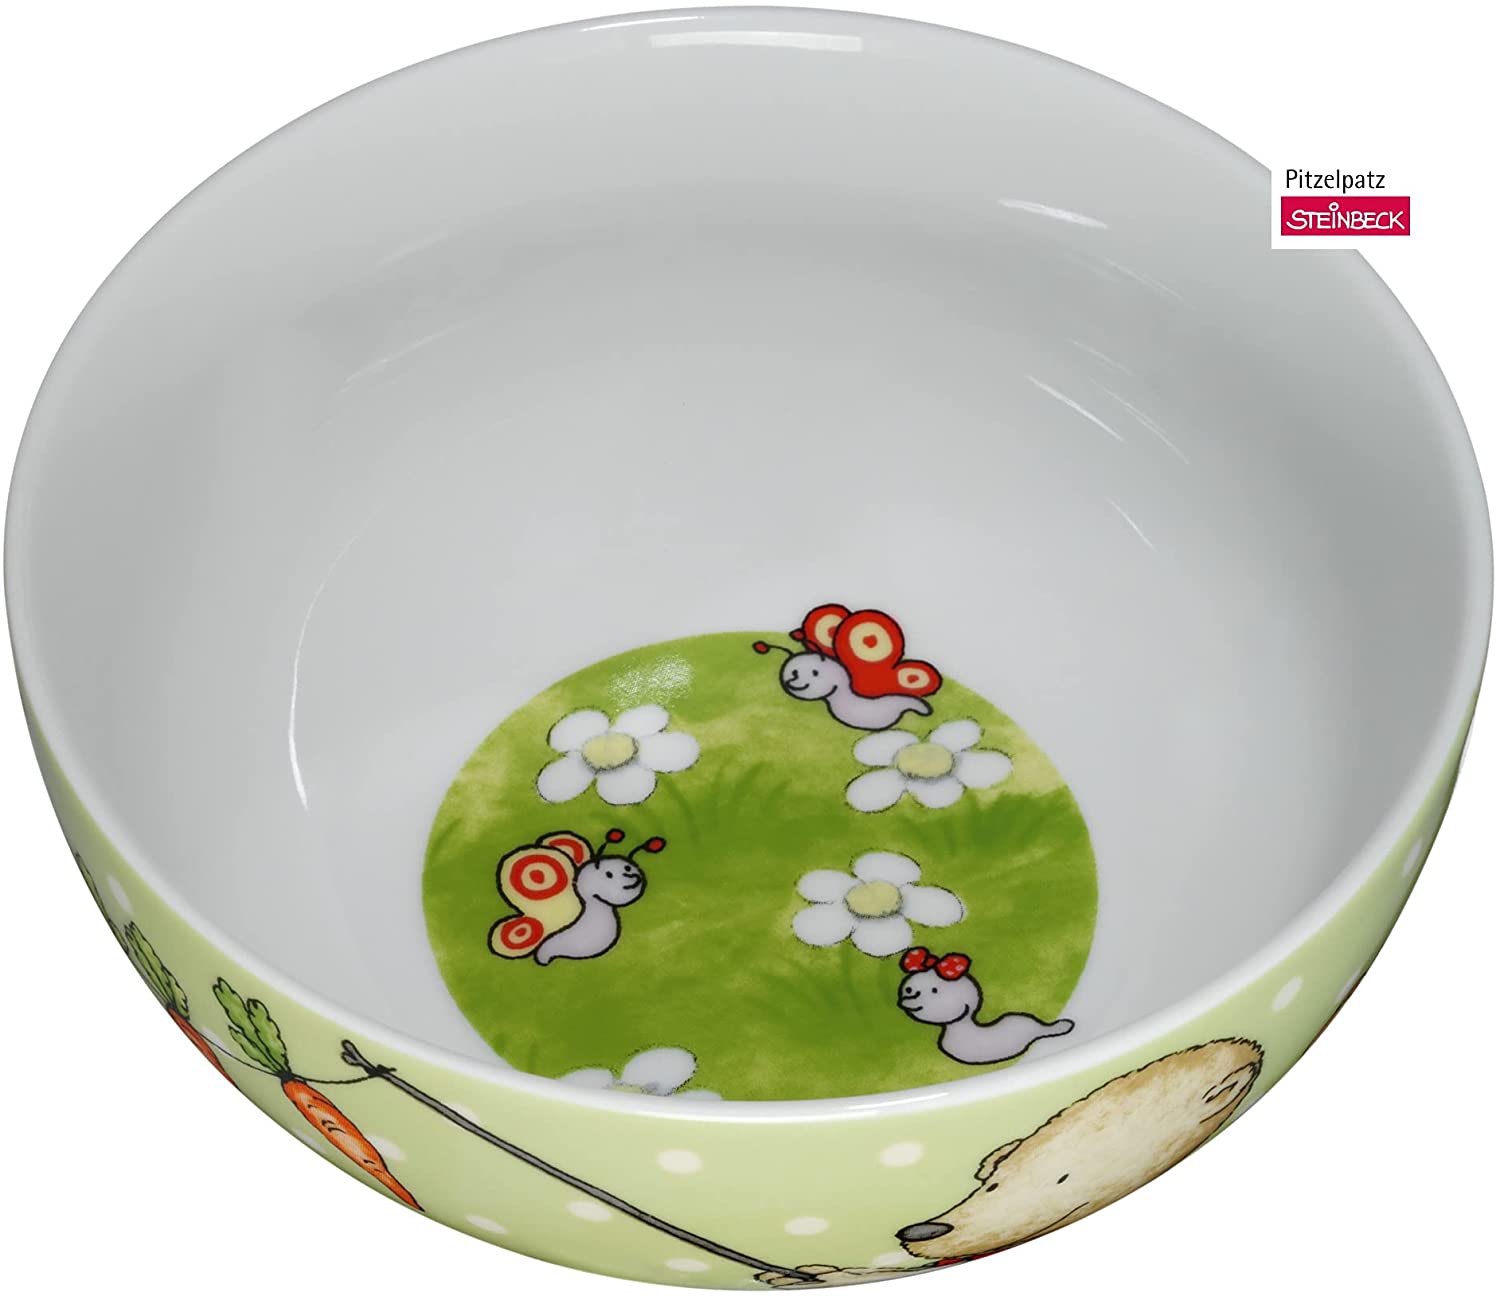 WMF Pitzelpatz Children\'s Cereal Bowl 13.8 cm, Porcelain, Dishwasher Safe, Colour and Food Safe